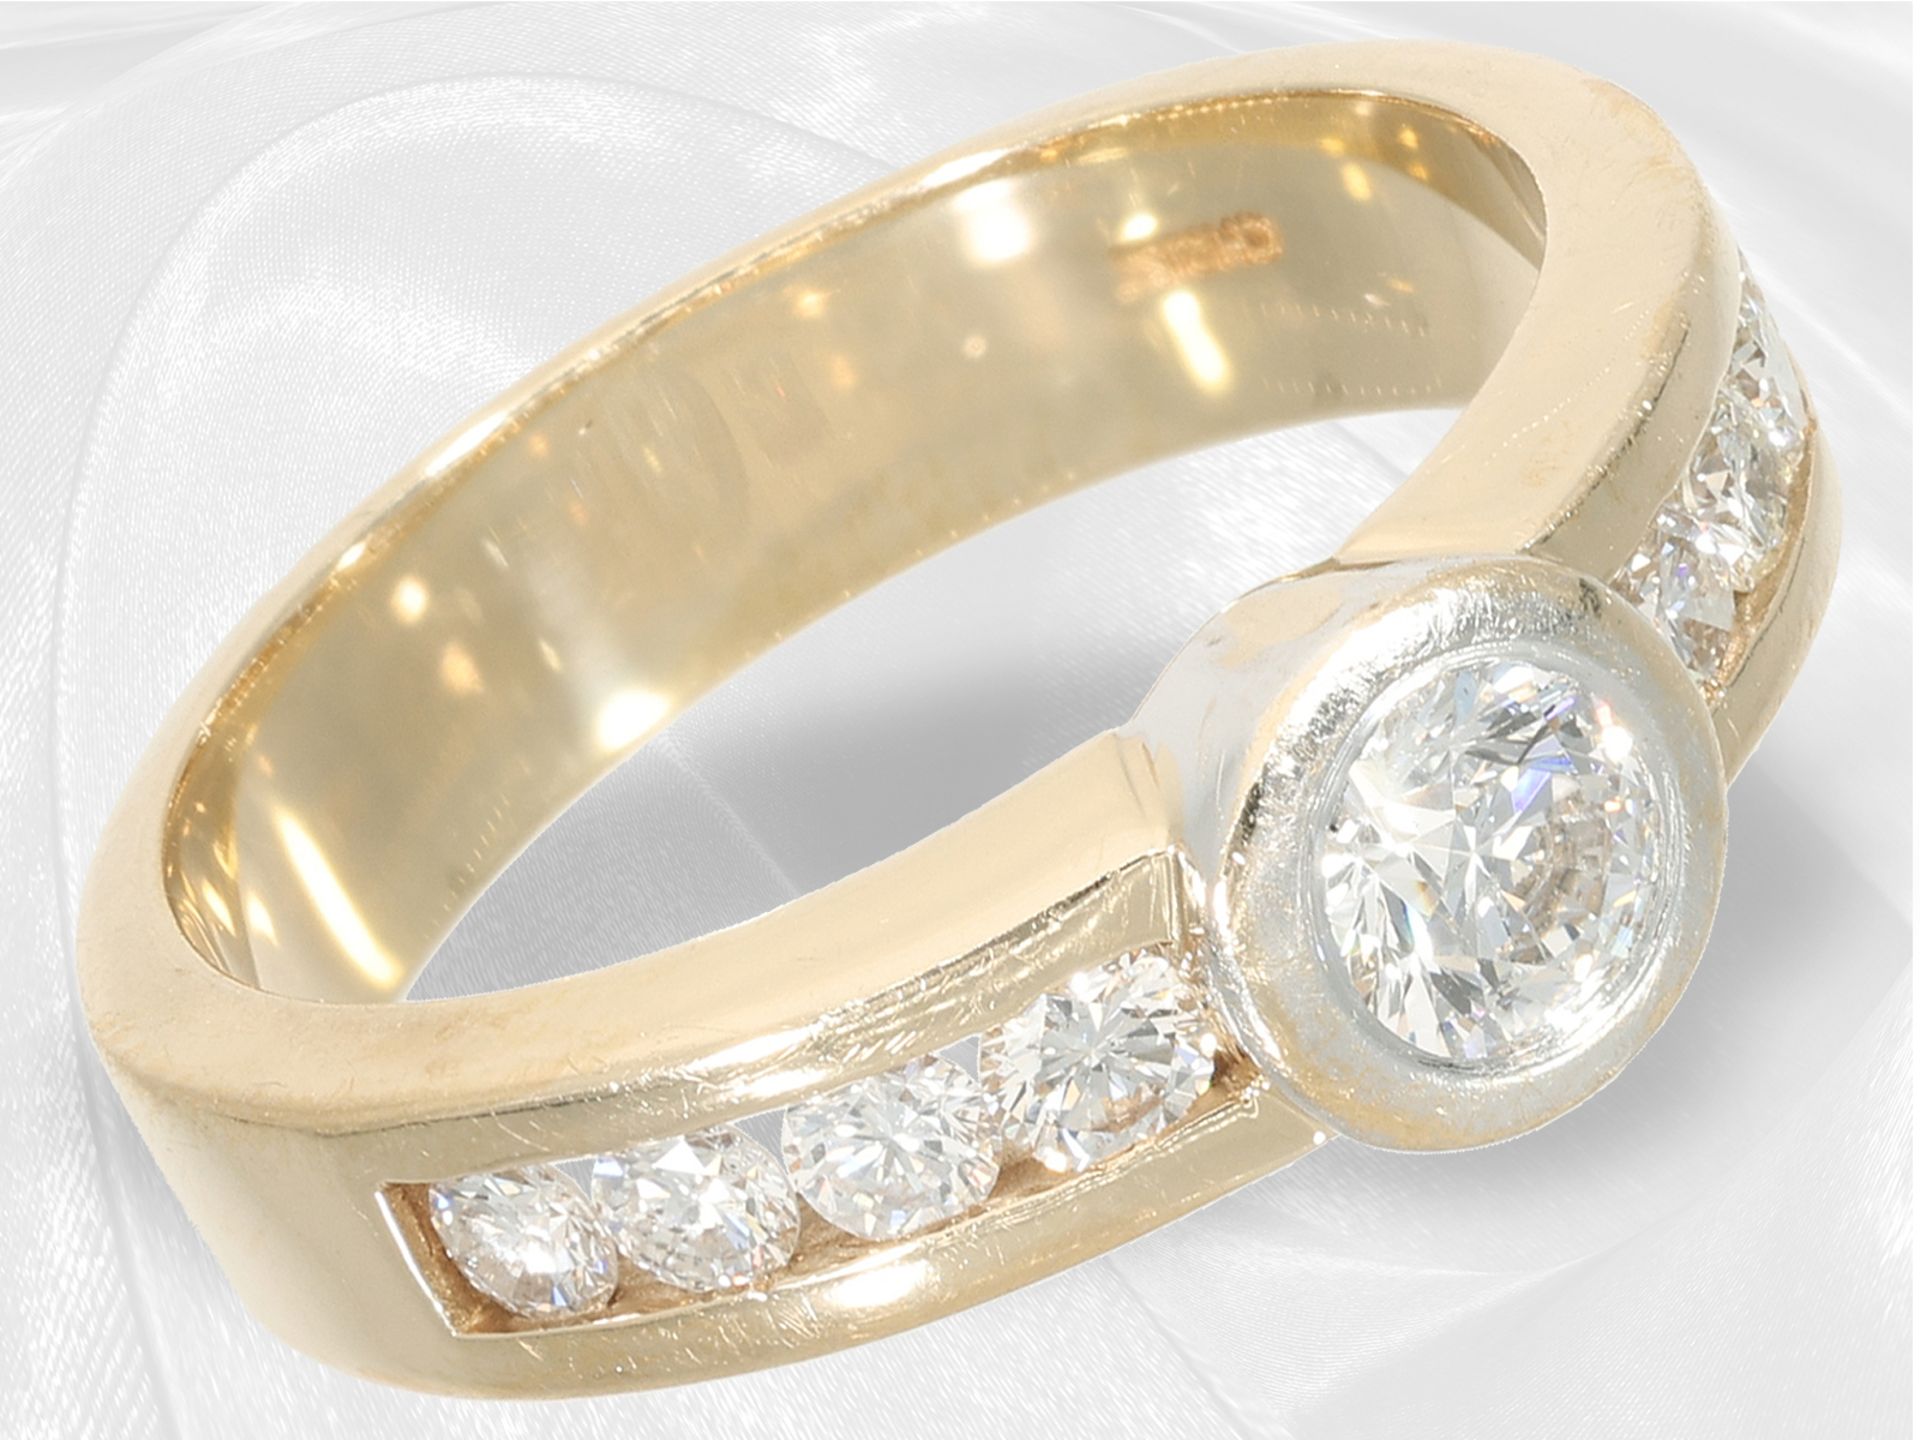 Ring: Markenschmuck, goldener Brillantring von Christ mit Zertifikat, ca. 1ct Brillanten - Bild 3 aus 4